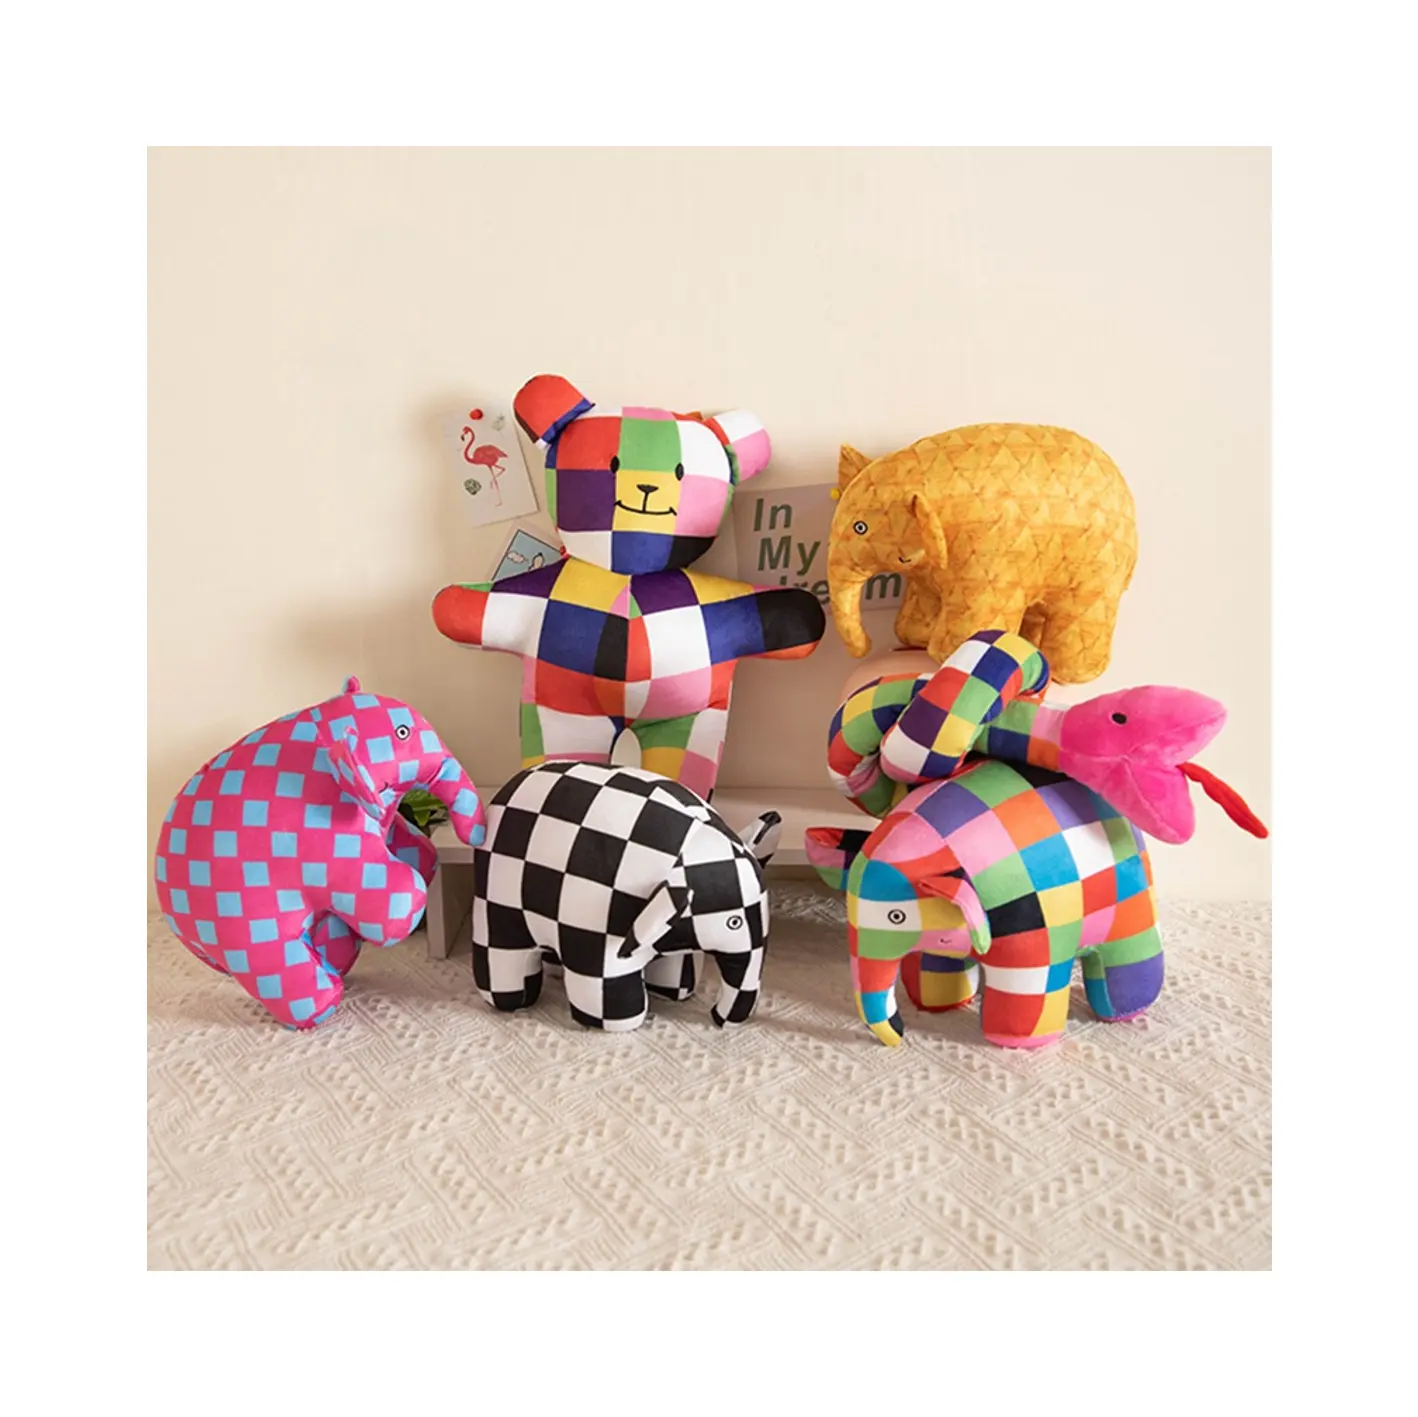 Cartone animato animali di peluche elefante giocattoli di peluche per bambini regalo colorato Rig elefante olmer bambola